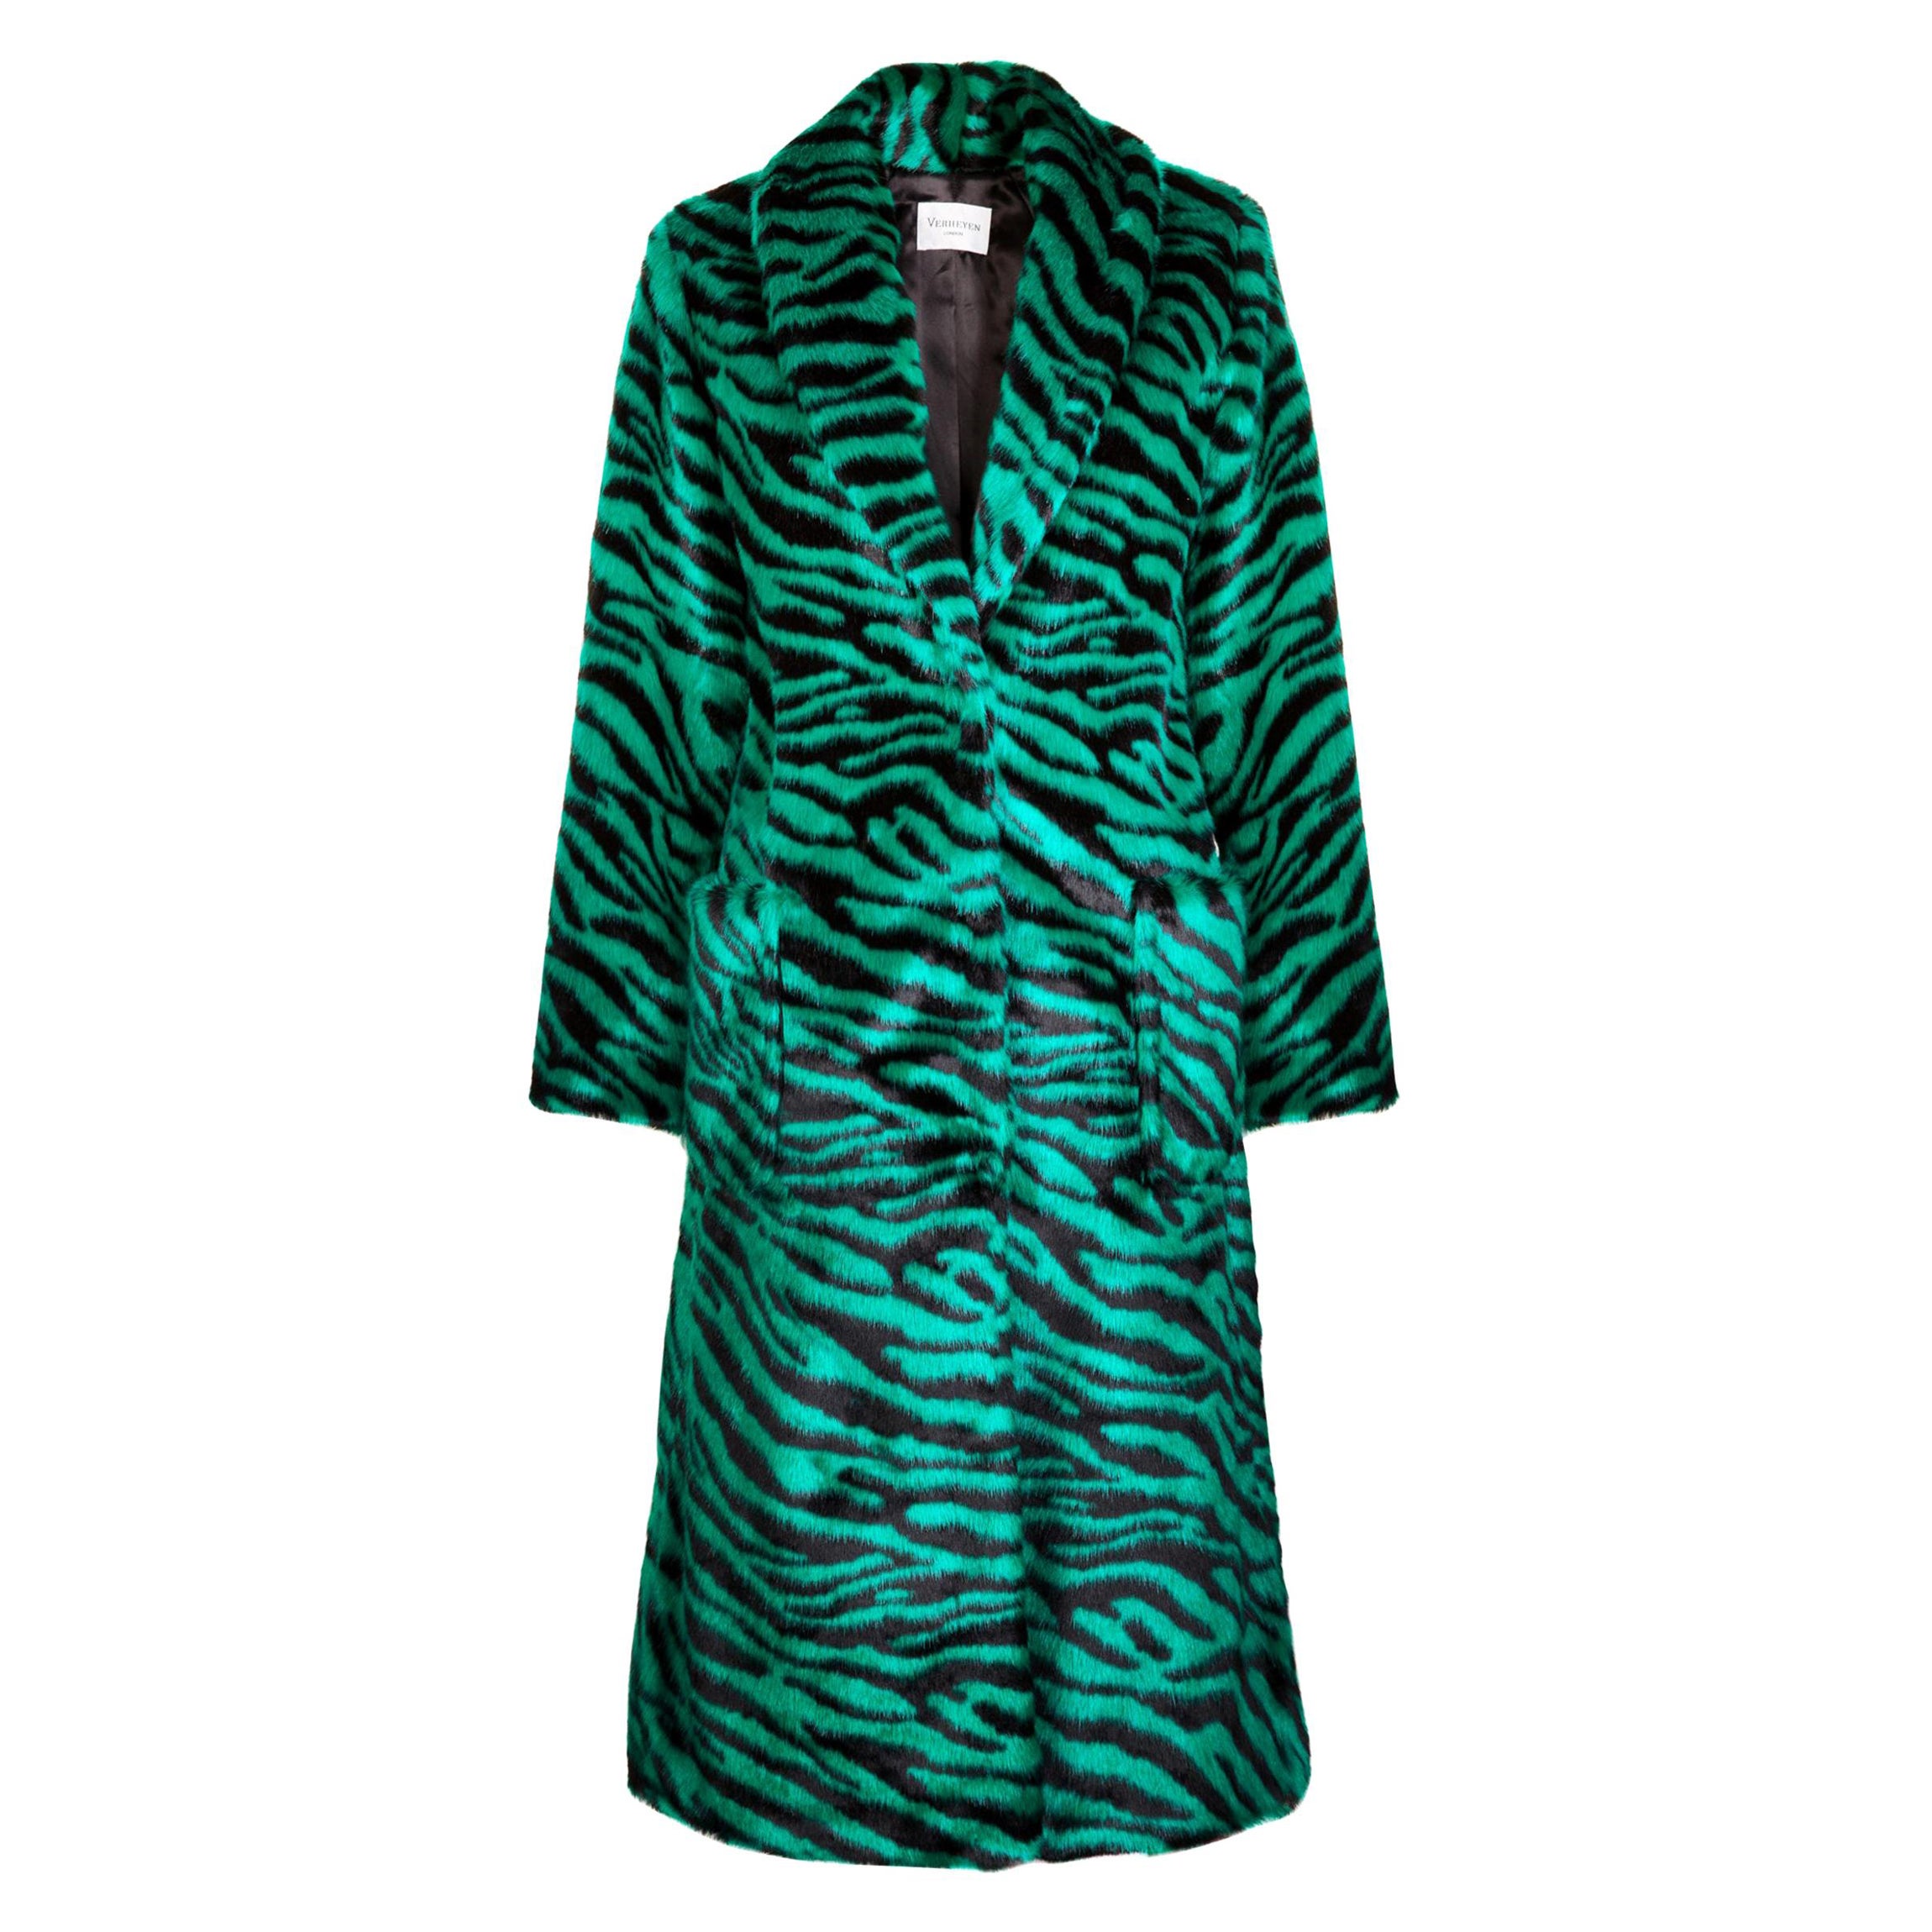 Verheyen London Esmeralda Faux Fur Coat in Emerald Green Zebra Print size uk 8 For Sale